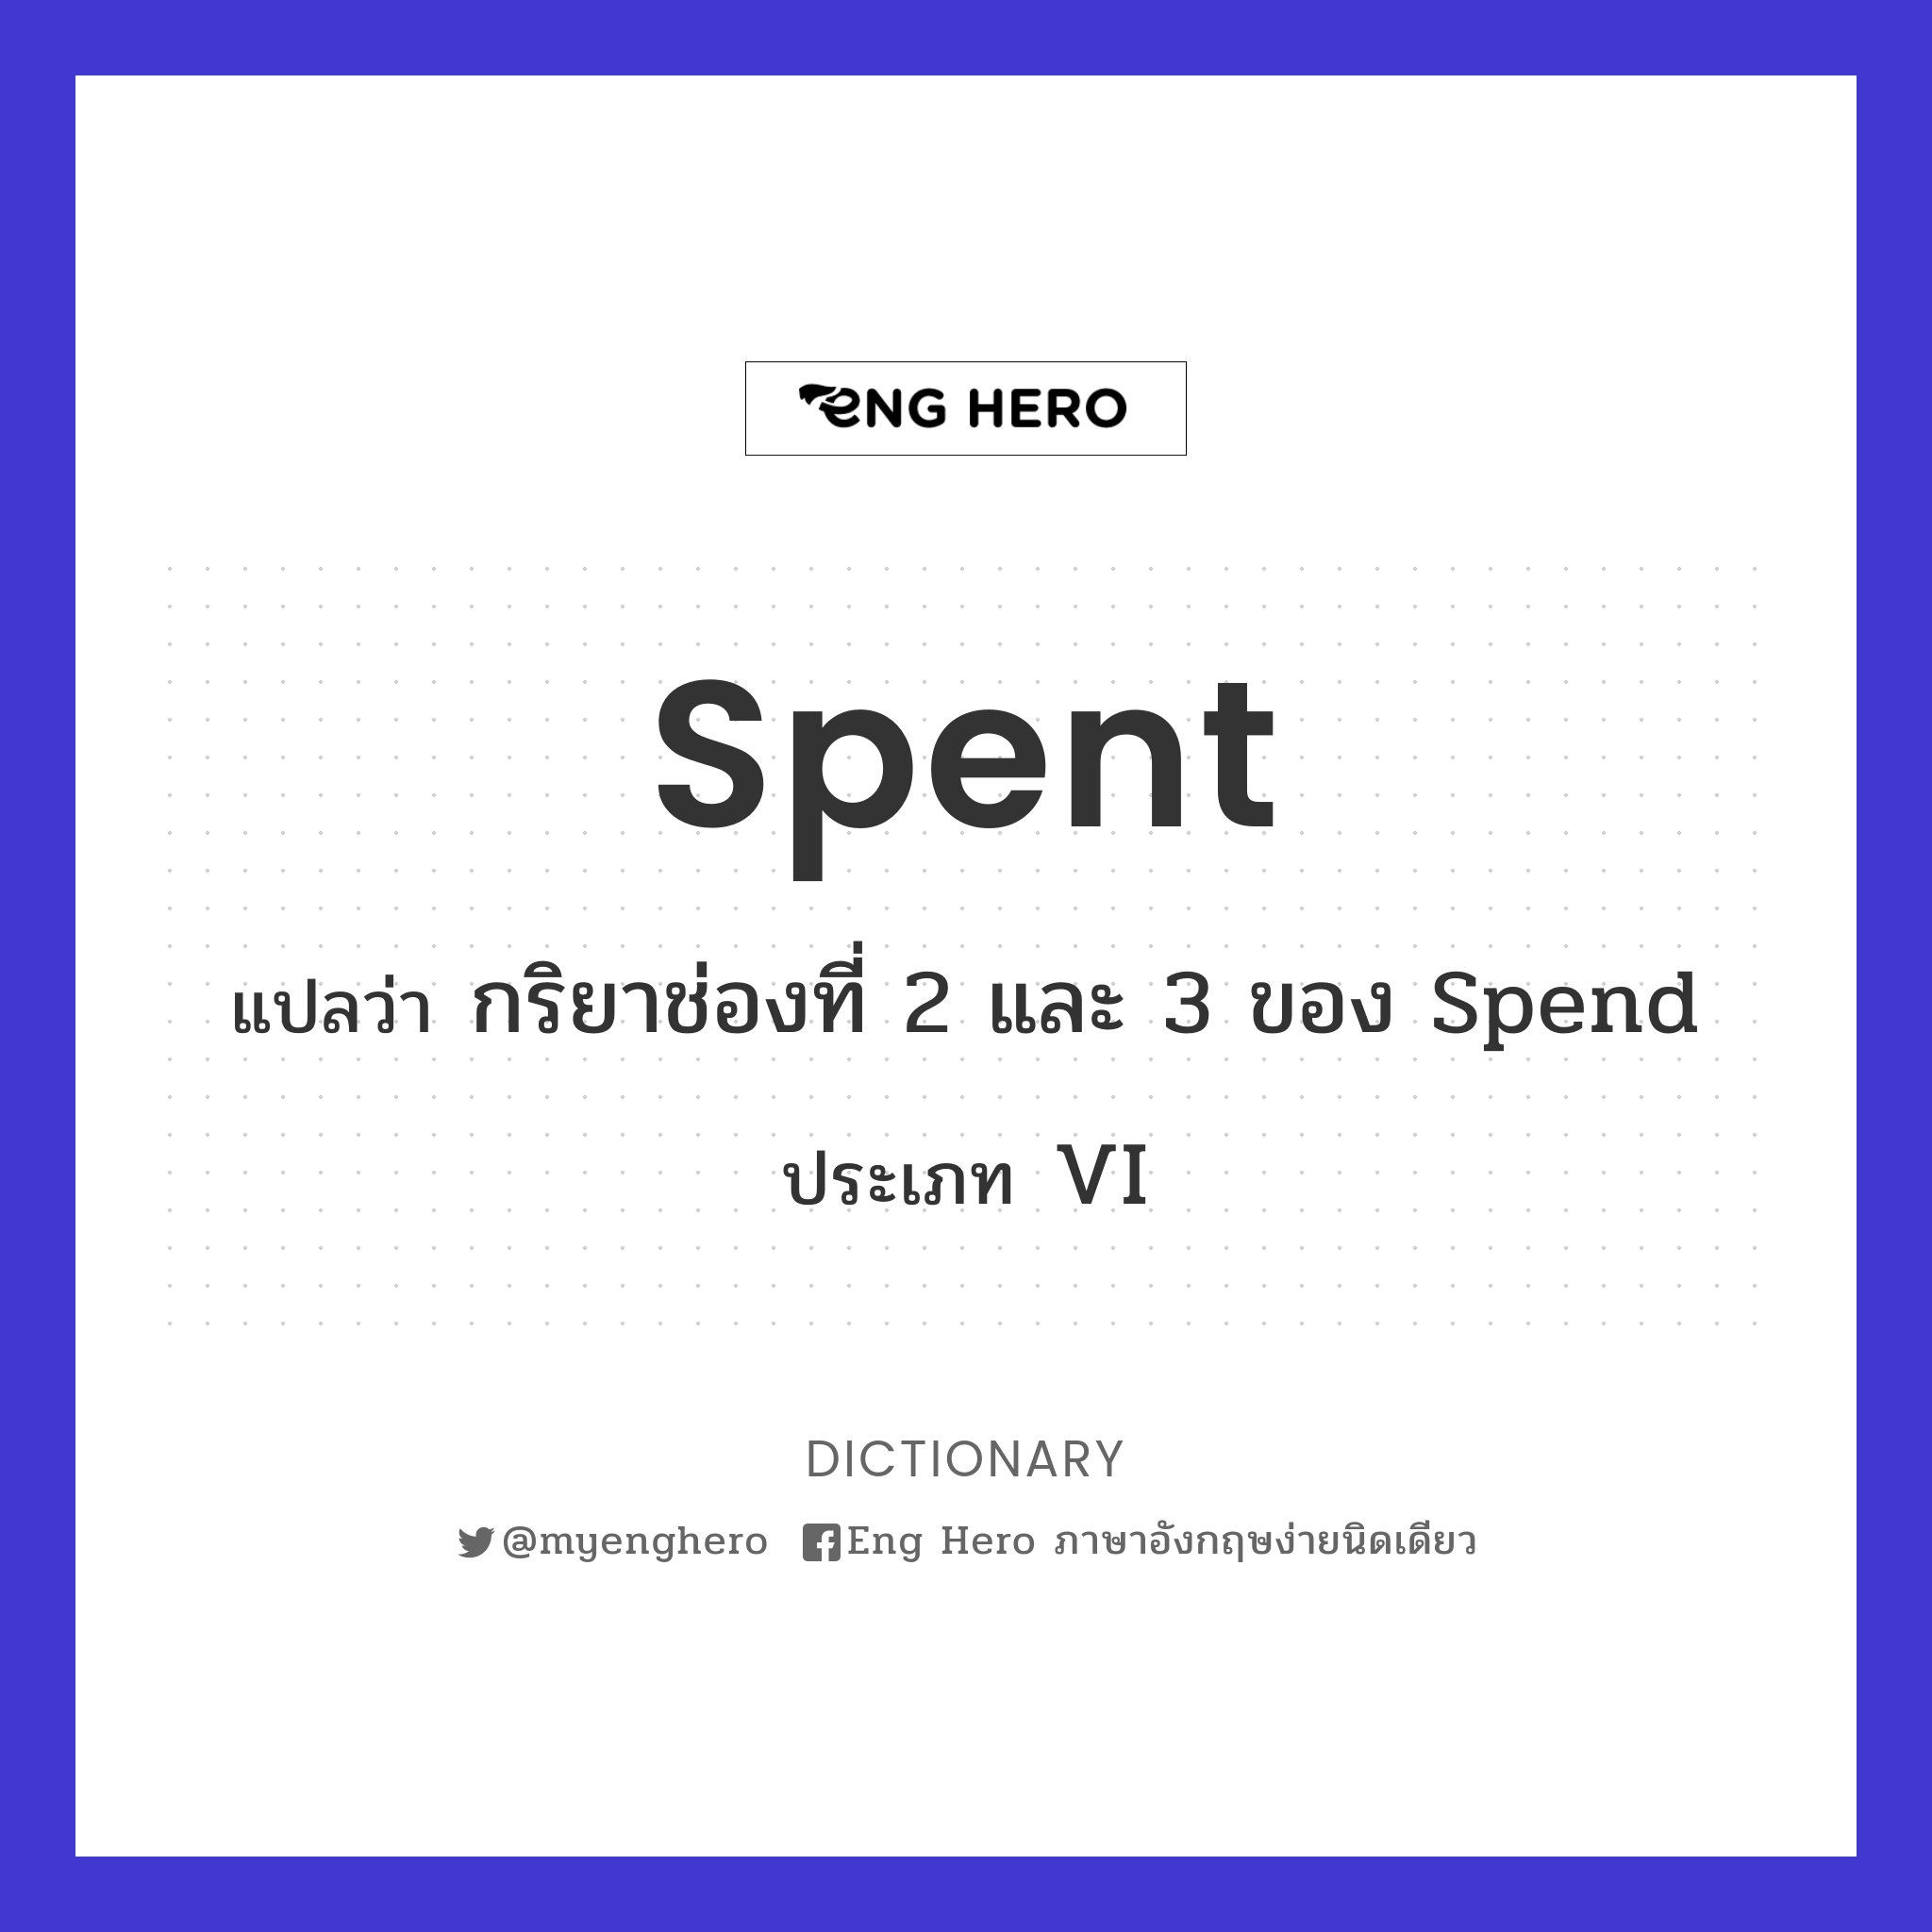 spent